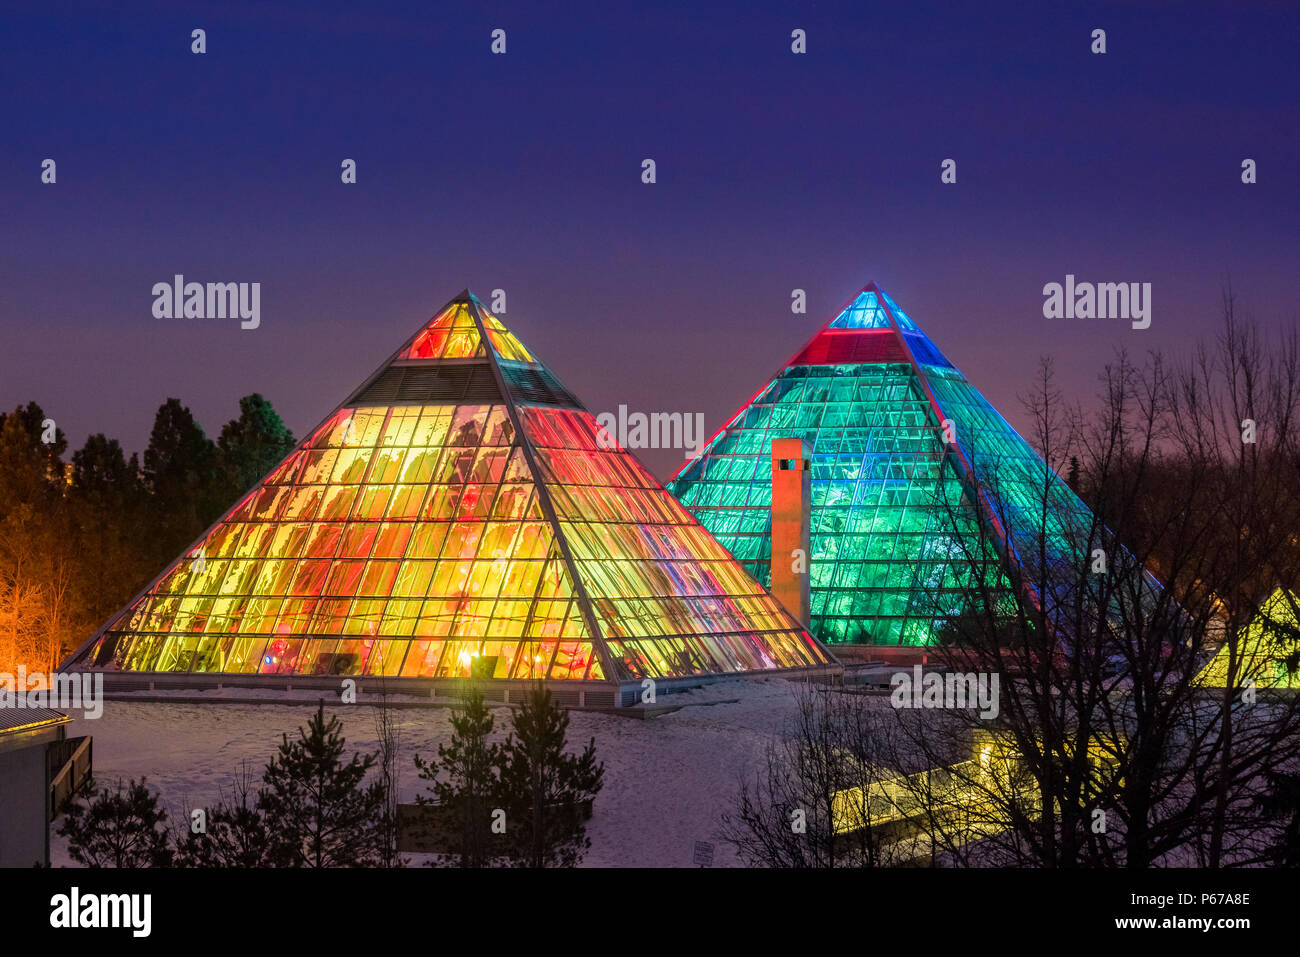 Allumé Muttart Conservatory pyramids, un jardin botanique à Edmonton, Alberta, Canada Banque D'Images